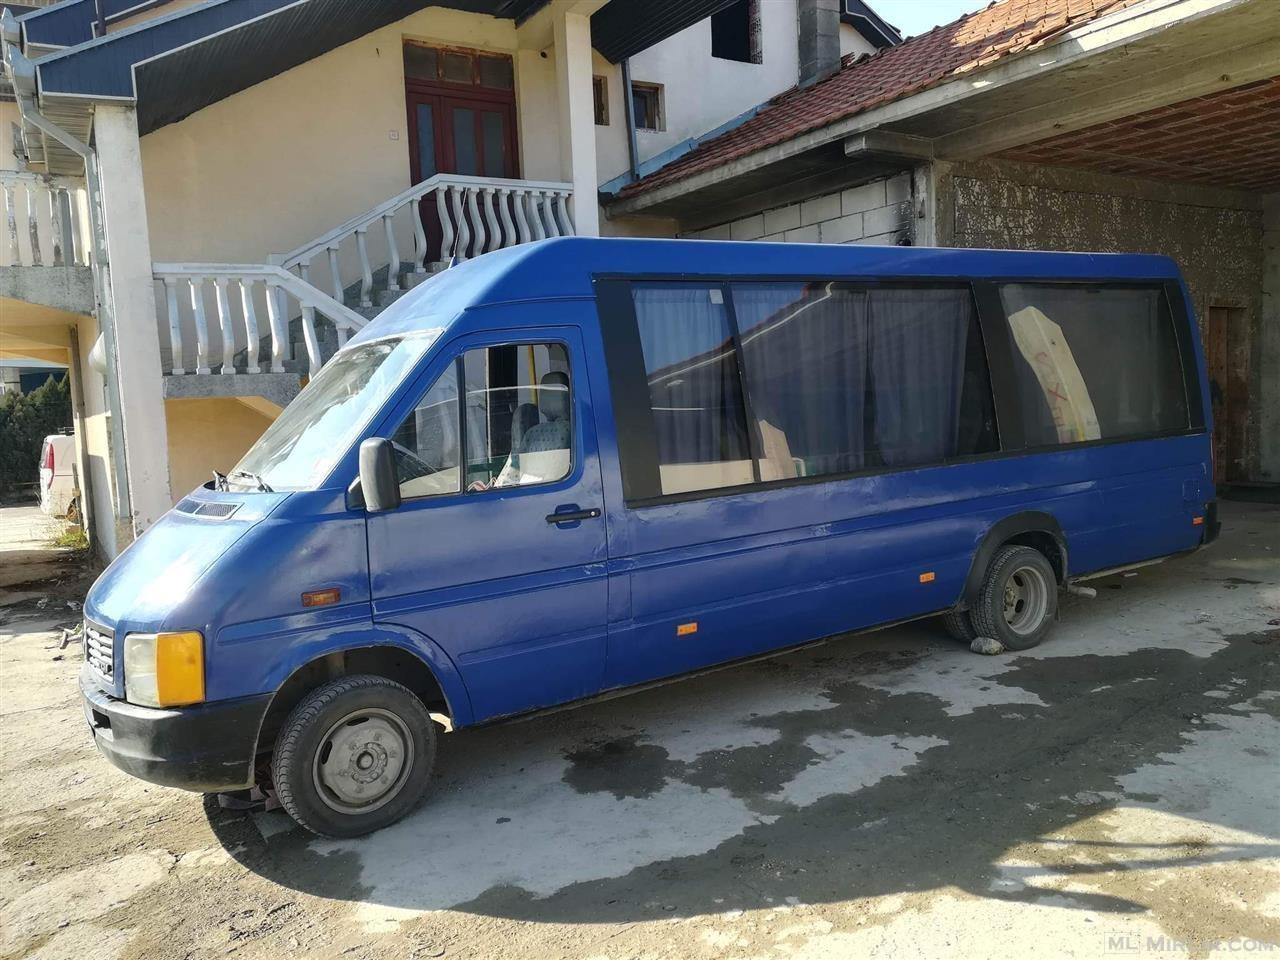 Minibus Lt 2.8 td Viti 2000 Rks 20 Ulse